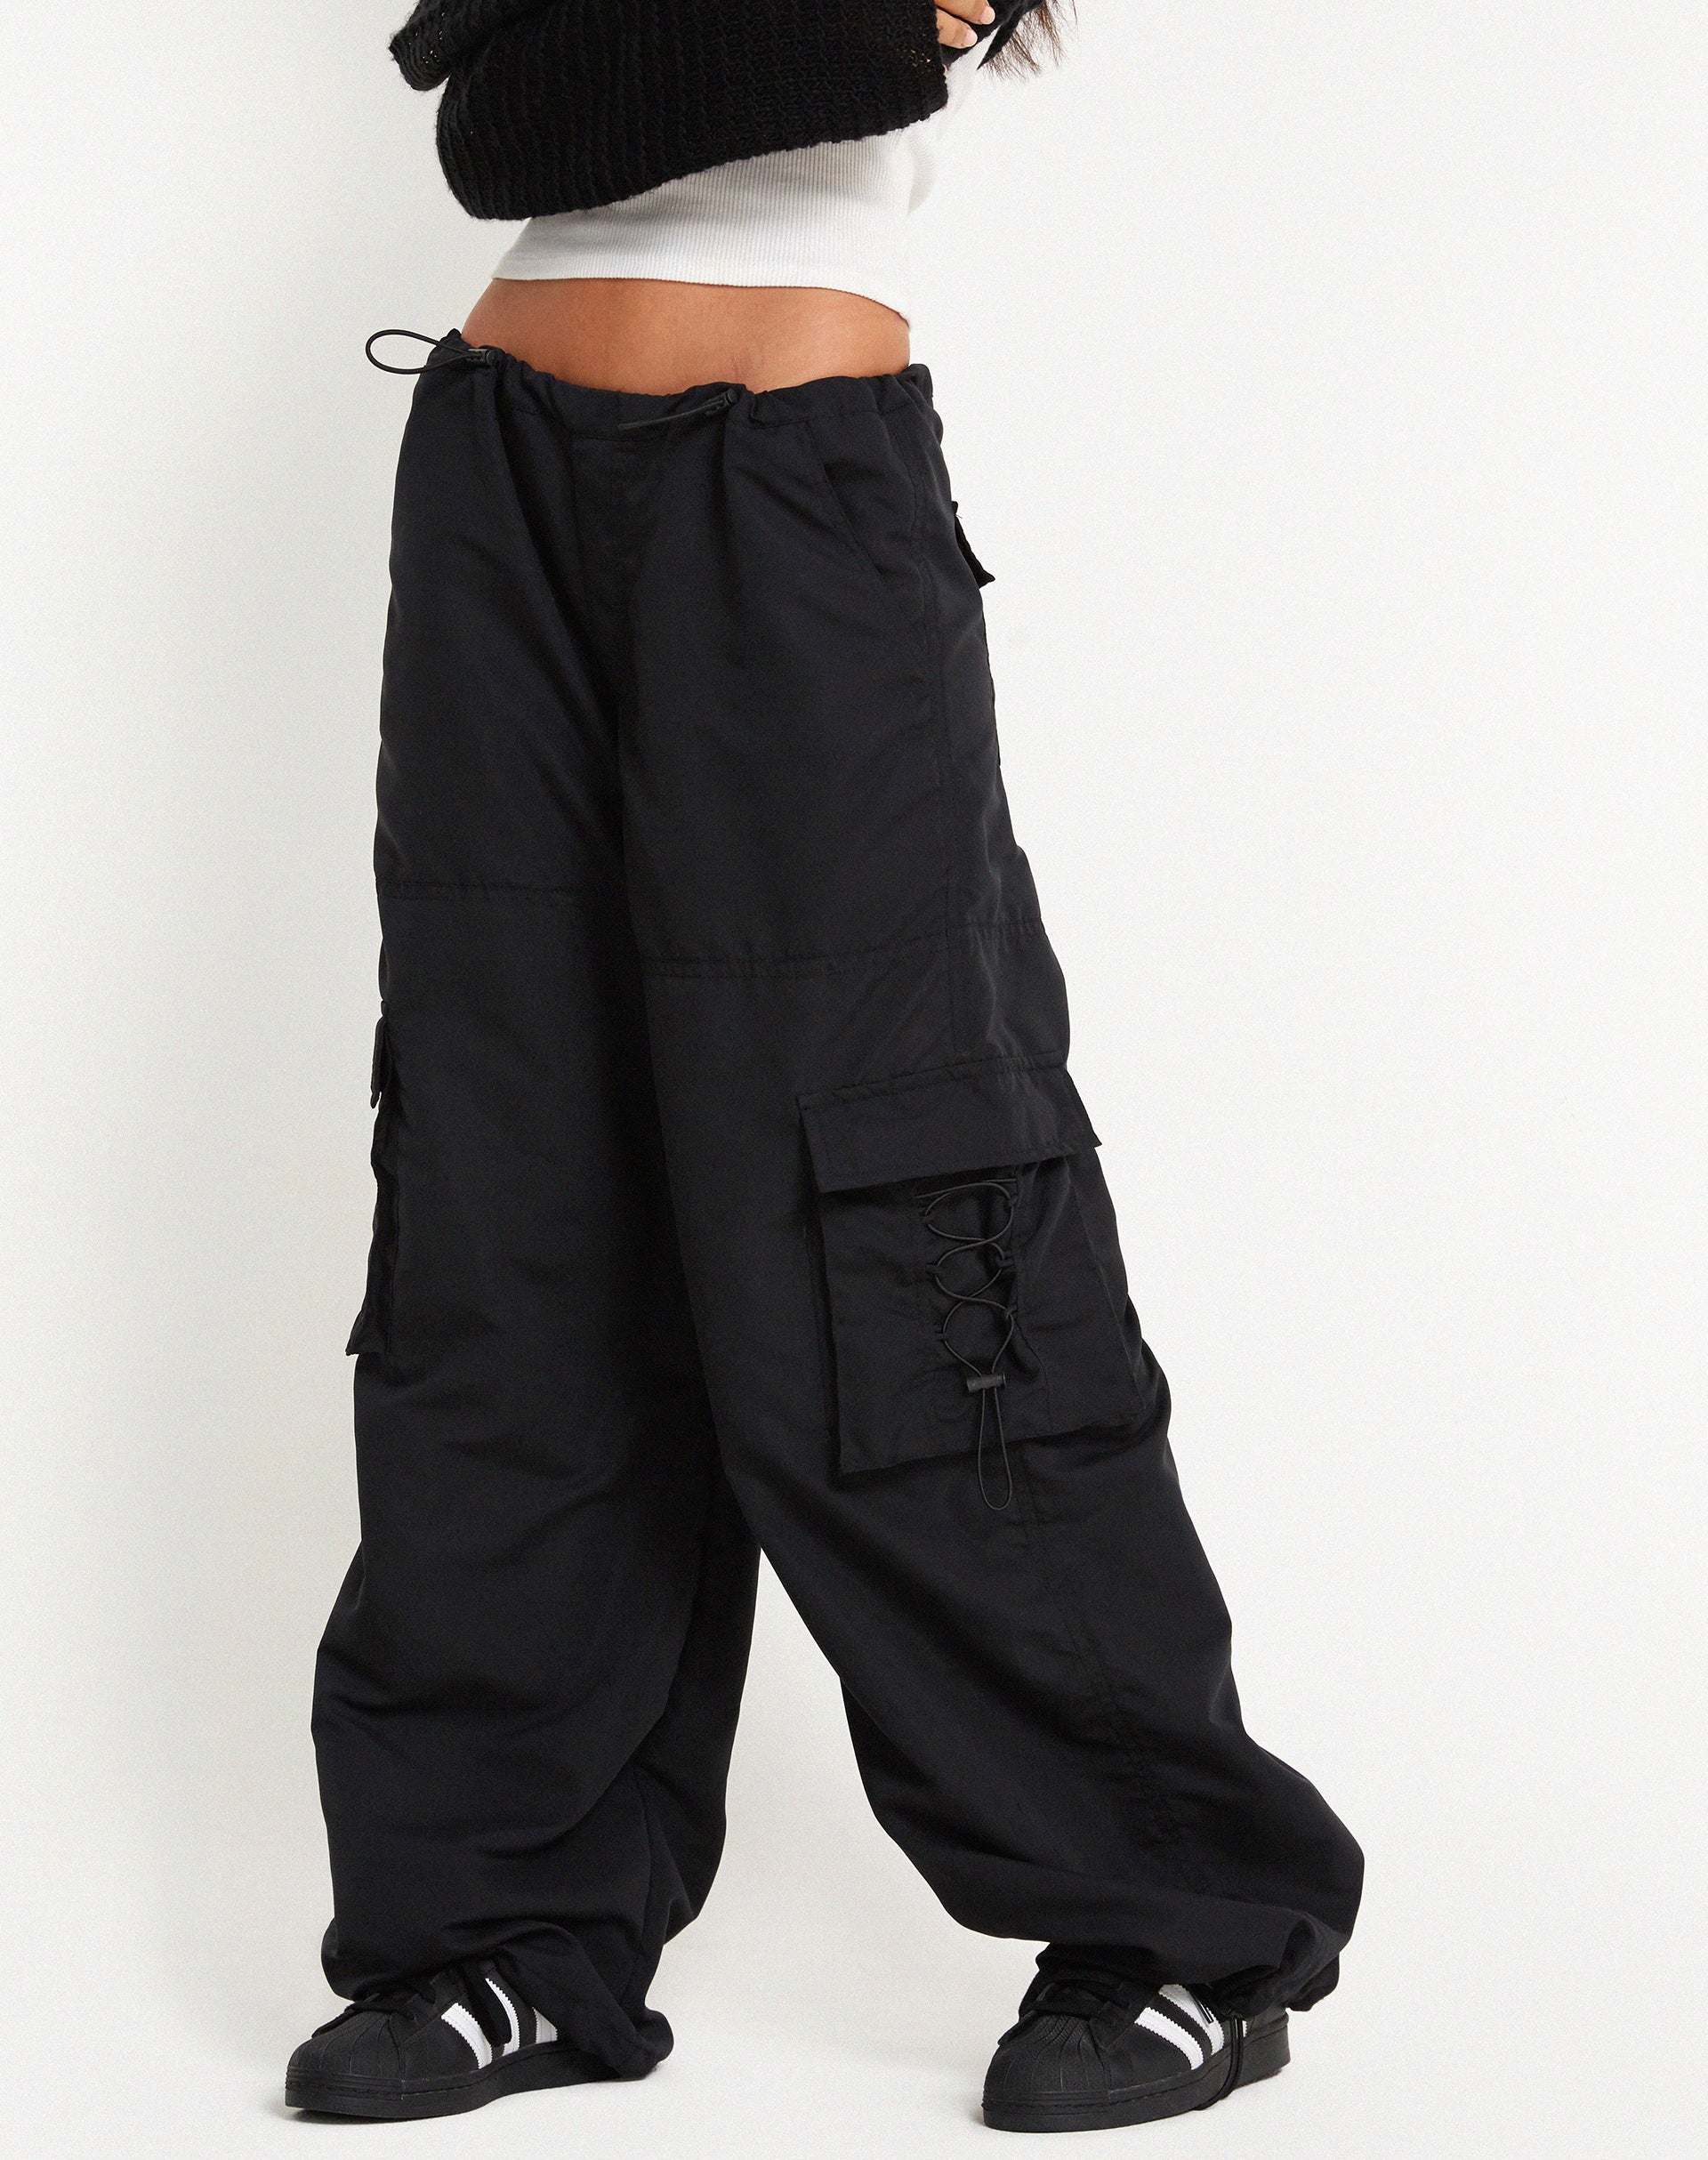 Buy Black Trousers  Pants for Women by FNOCKS Online  Ajiocom